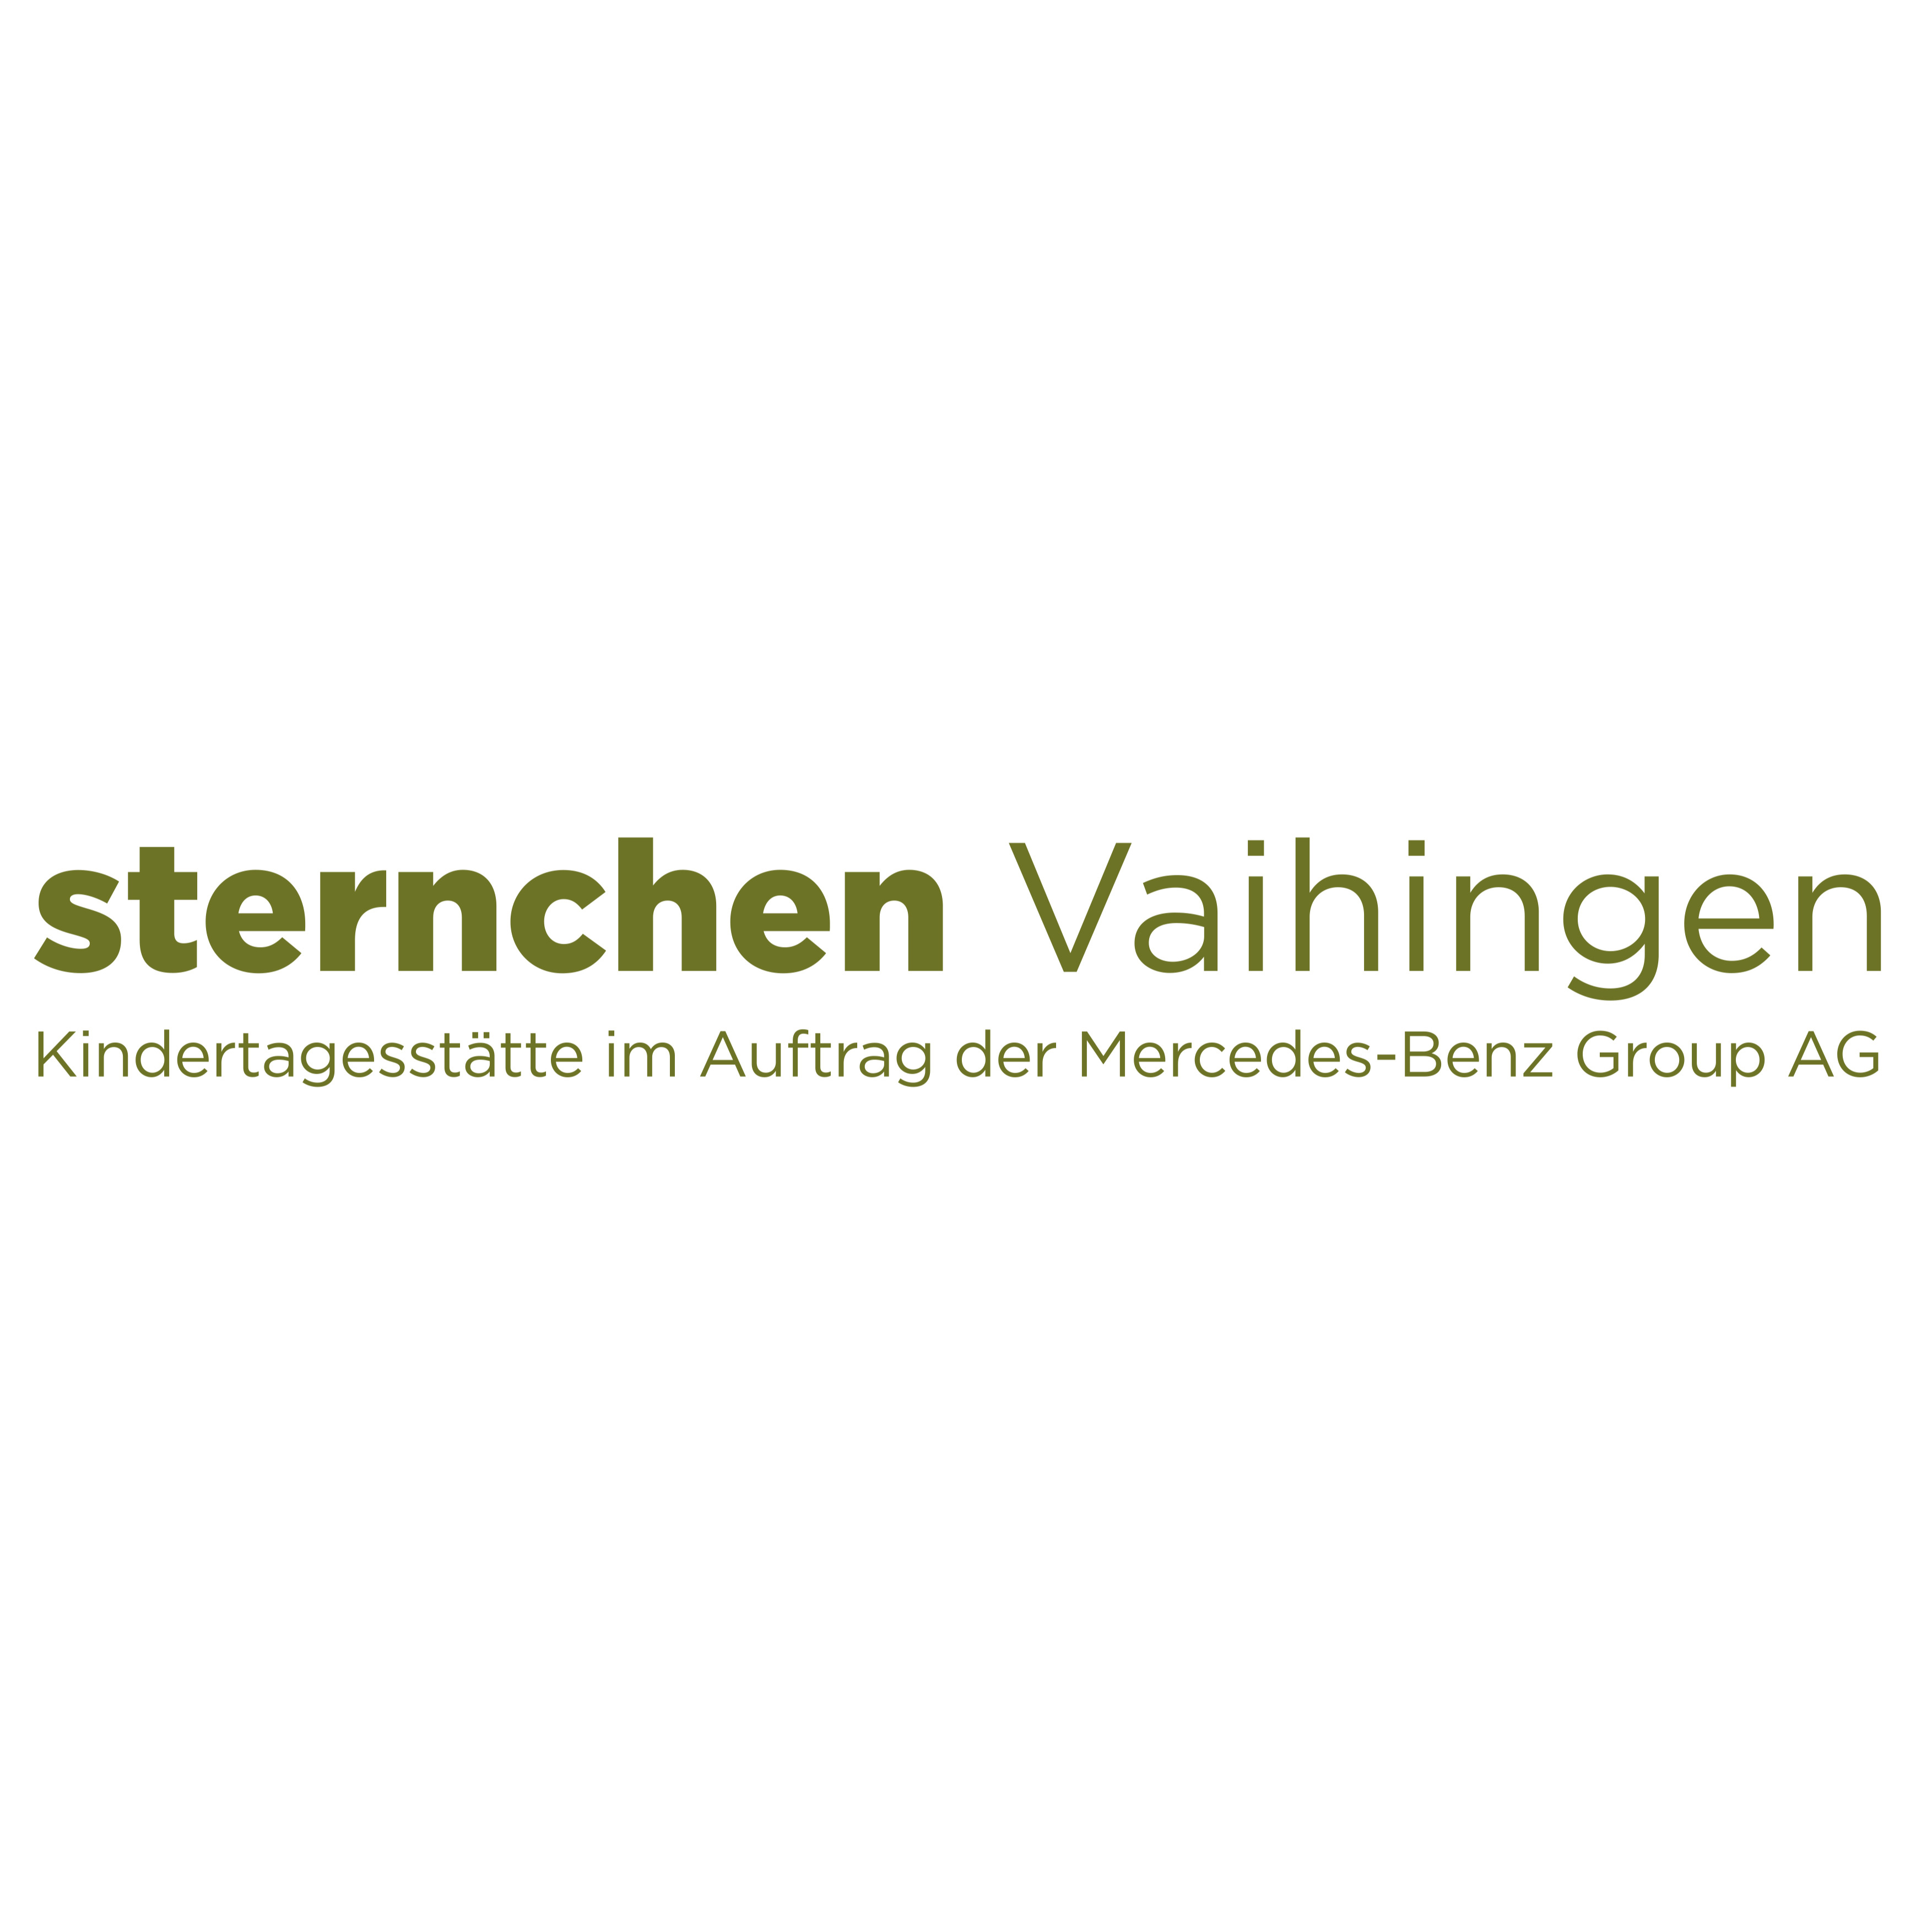 sternchen Vaihingen - pme Familienservice - Kindergarten - Stuttgart - 0711 22046700 Germany | ShowMeLocal.com